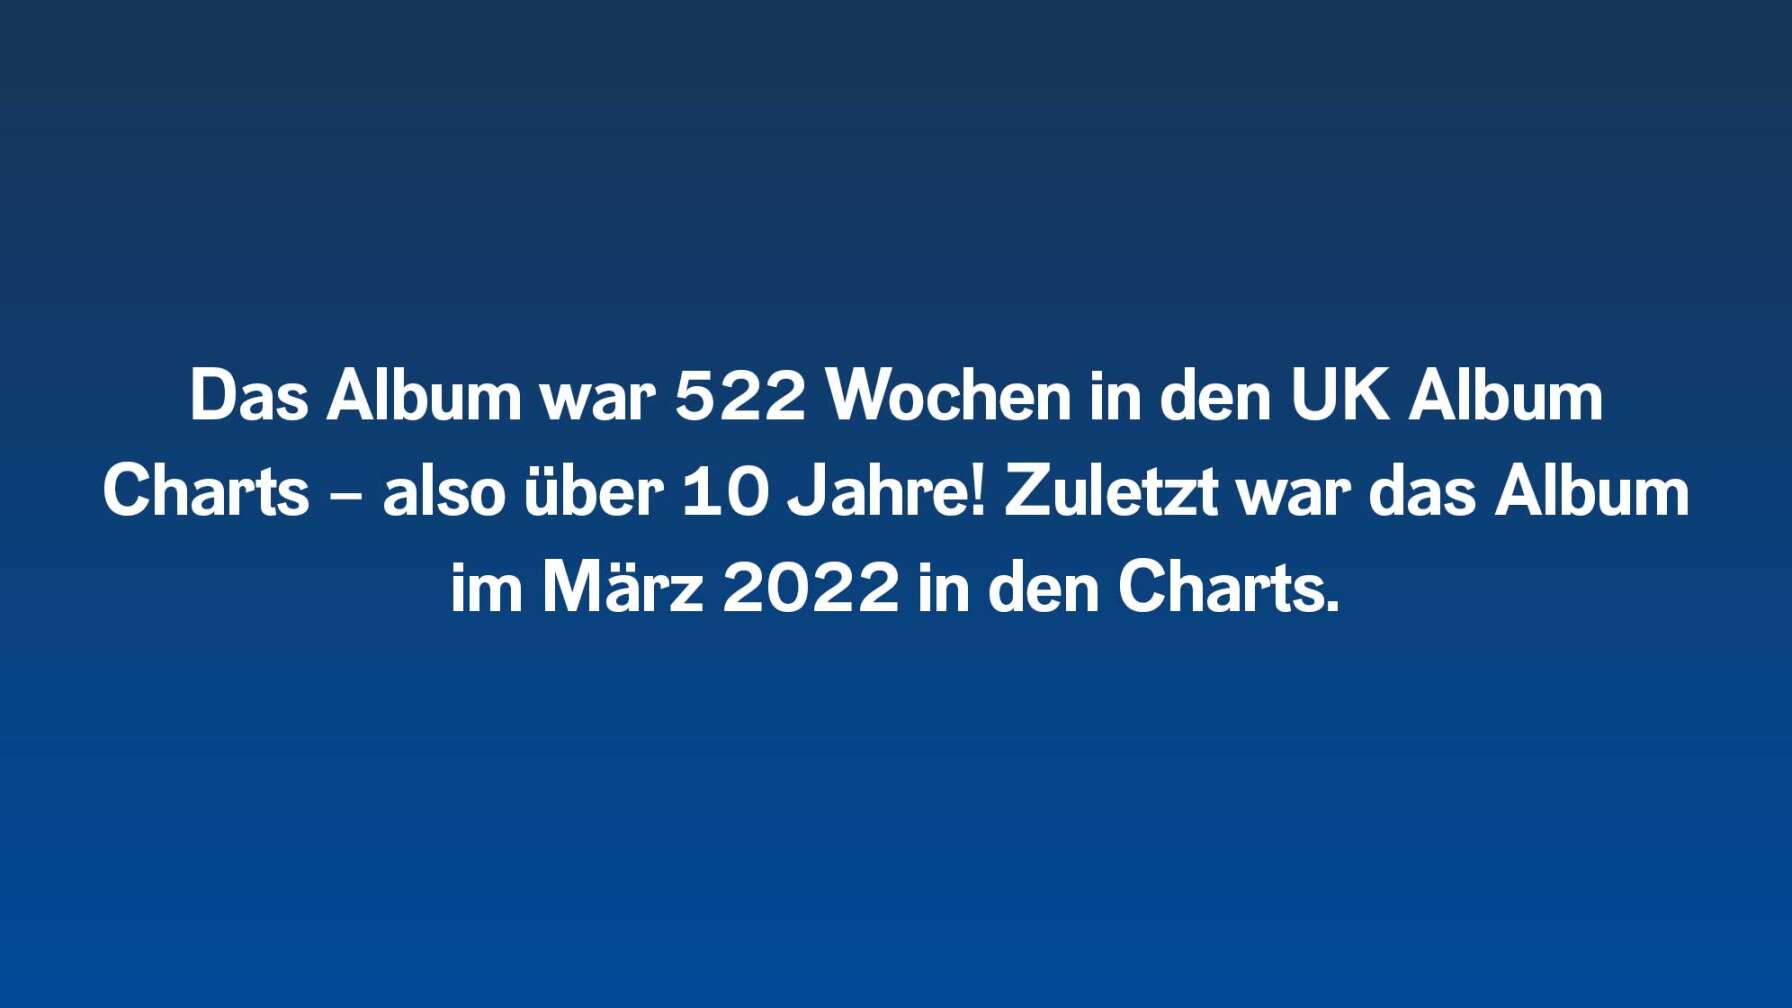 Das Album war 522 Wochen in den UK Album Charts – also über 10 Jahre! Zuletzt war das Album im März 2022 in den Charts.